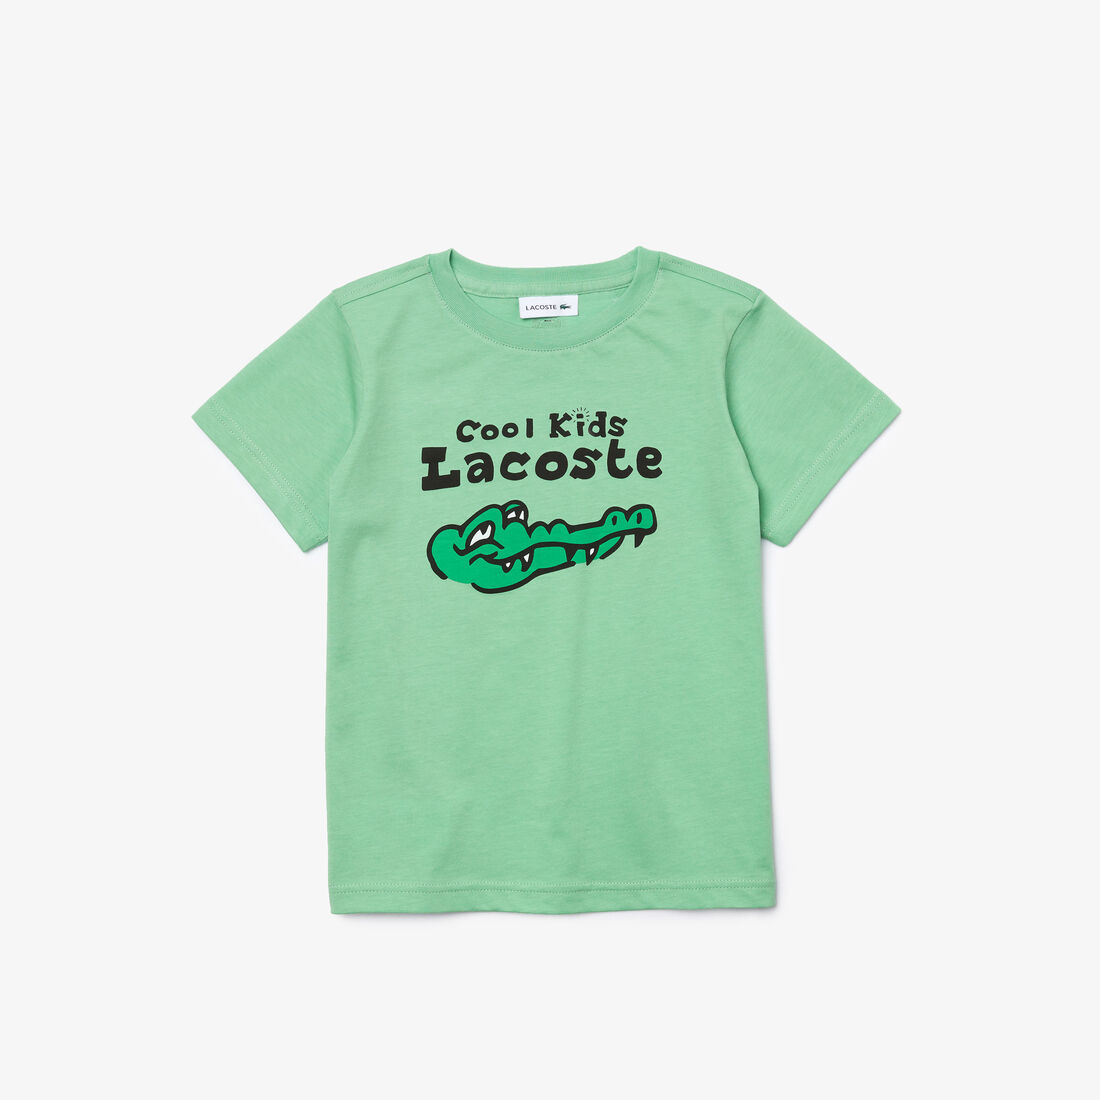 Boys’ Crew Neck Fun Design Cotton T-shirt